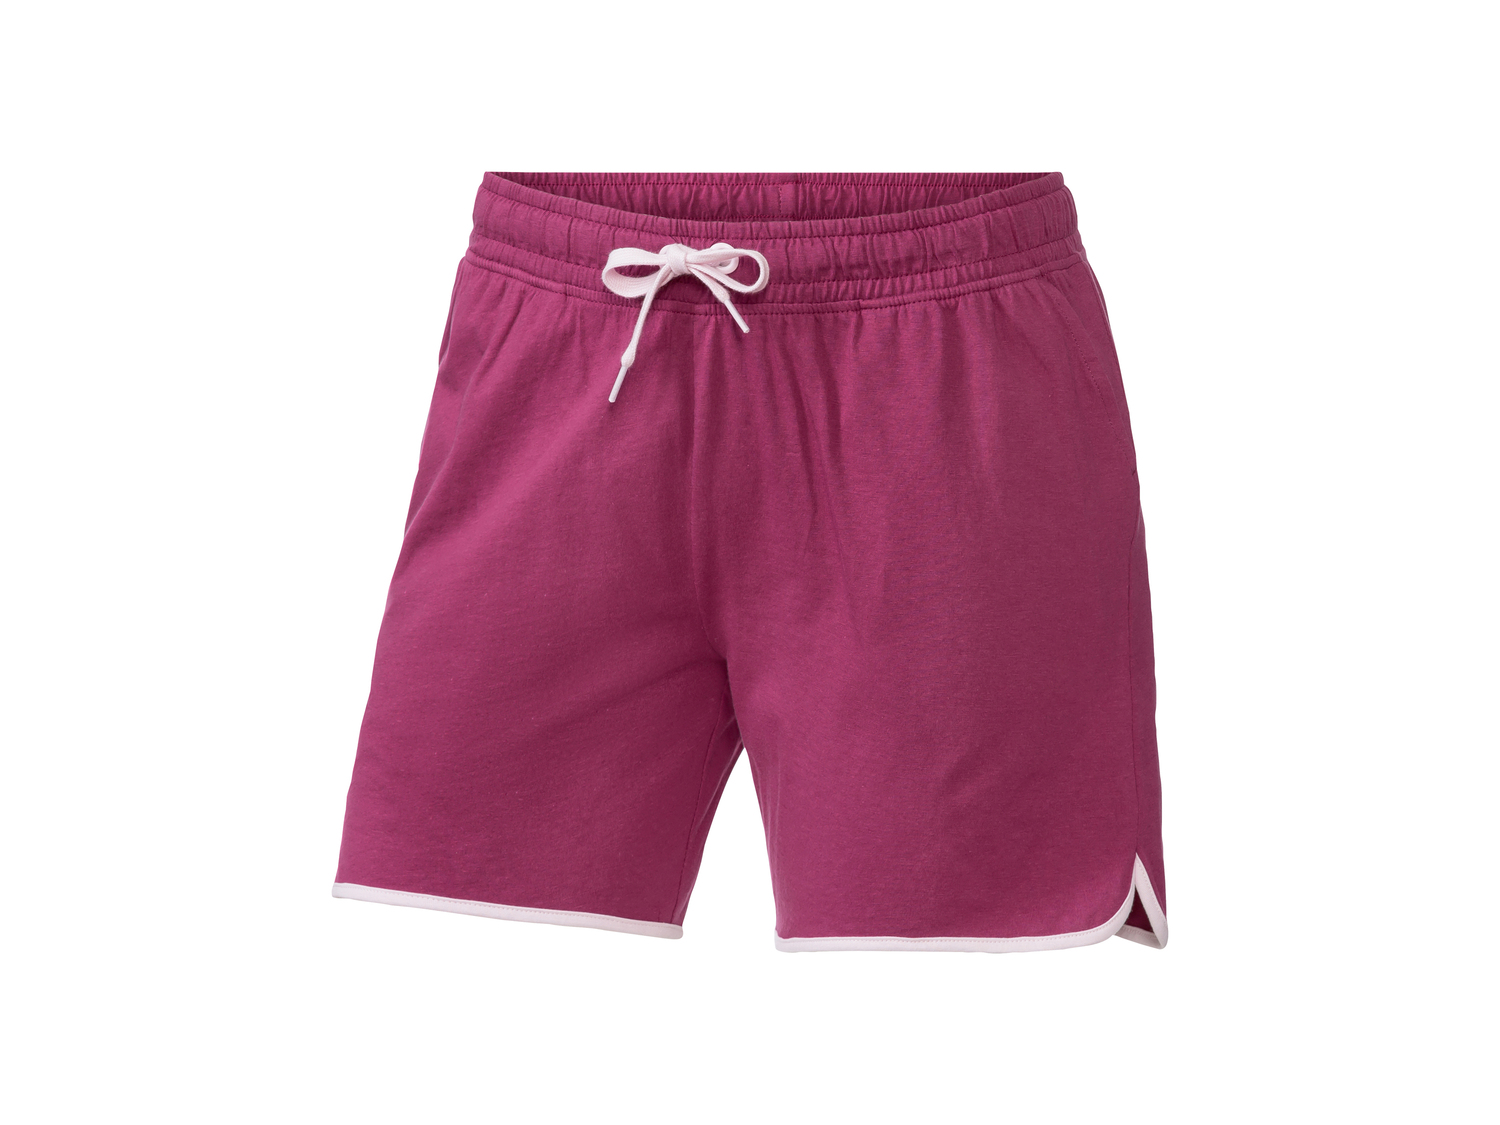 Shorts da donna Kappa, prezzo 9.99 &#8364; 
Misure: S-XL 
- -23%
Taglie disponibili

Caratteristiche
 ...